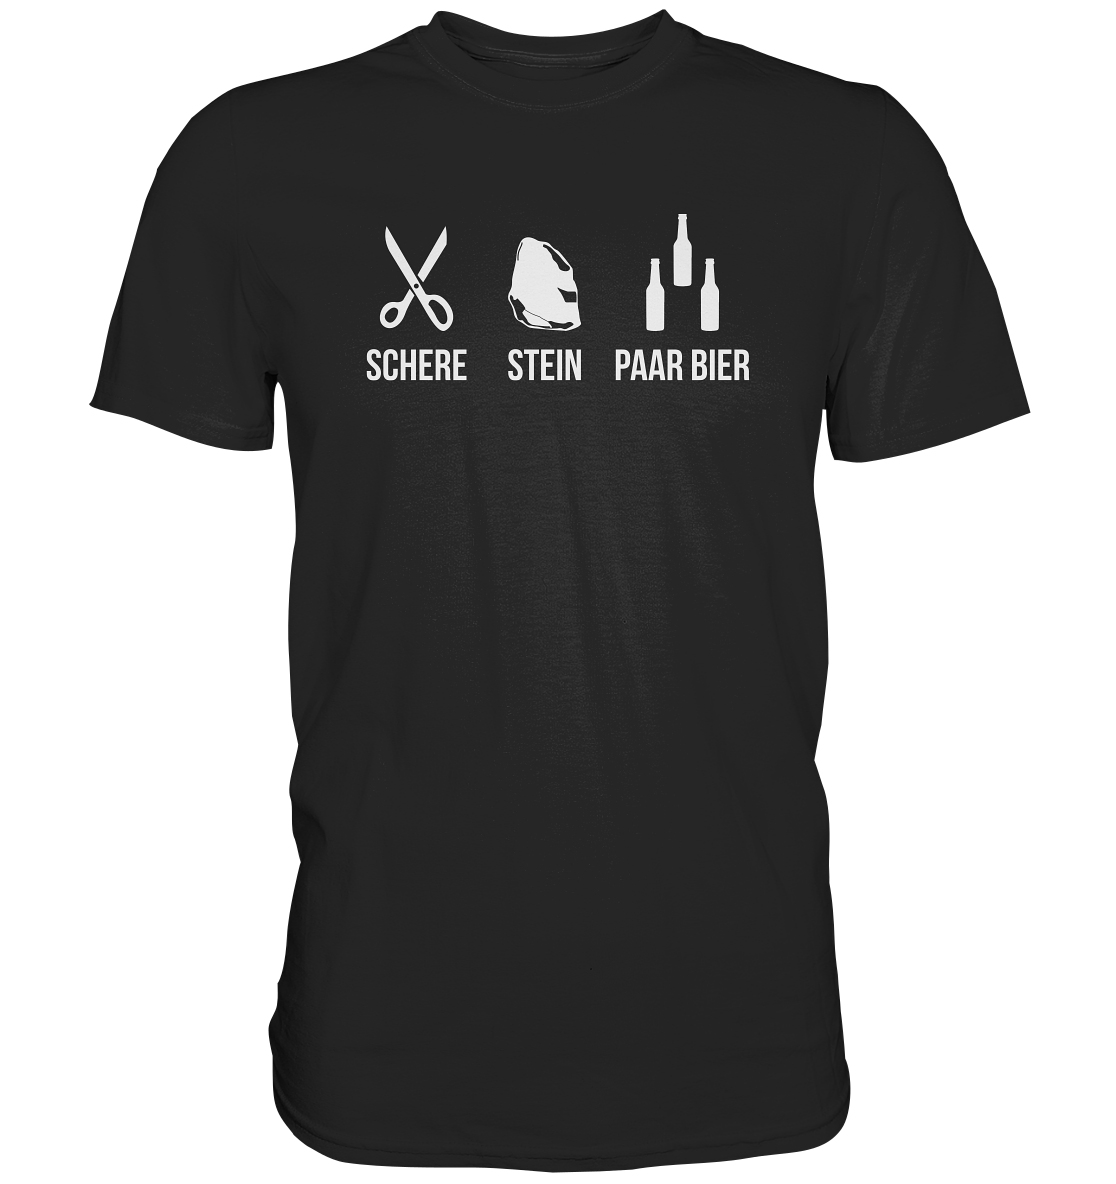 Schere, Stein, Paar Bier - Premium Shirt